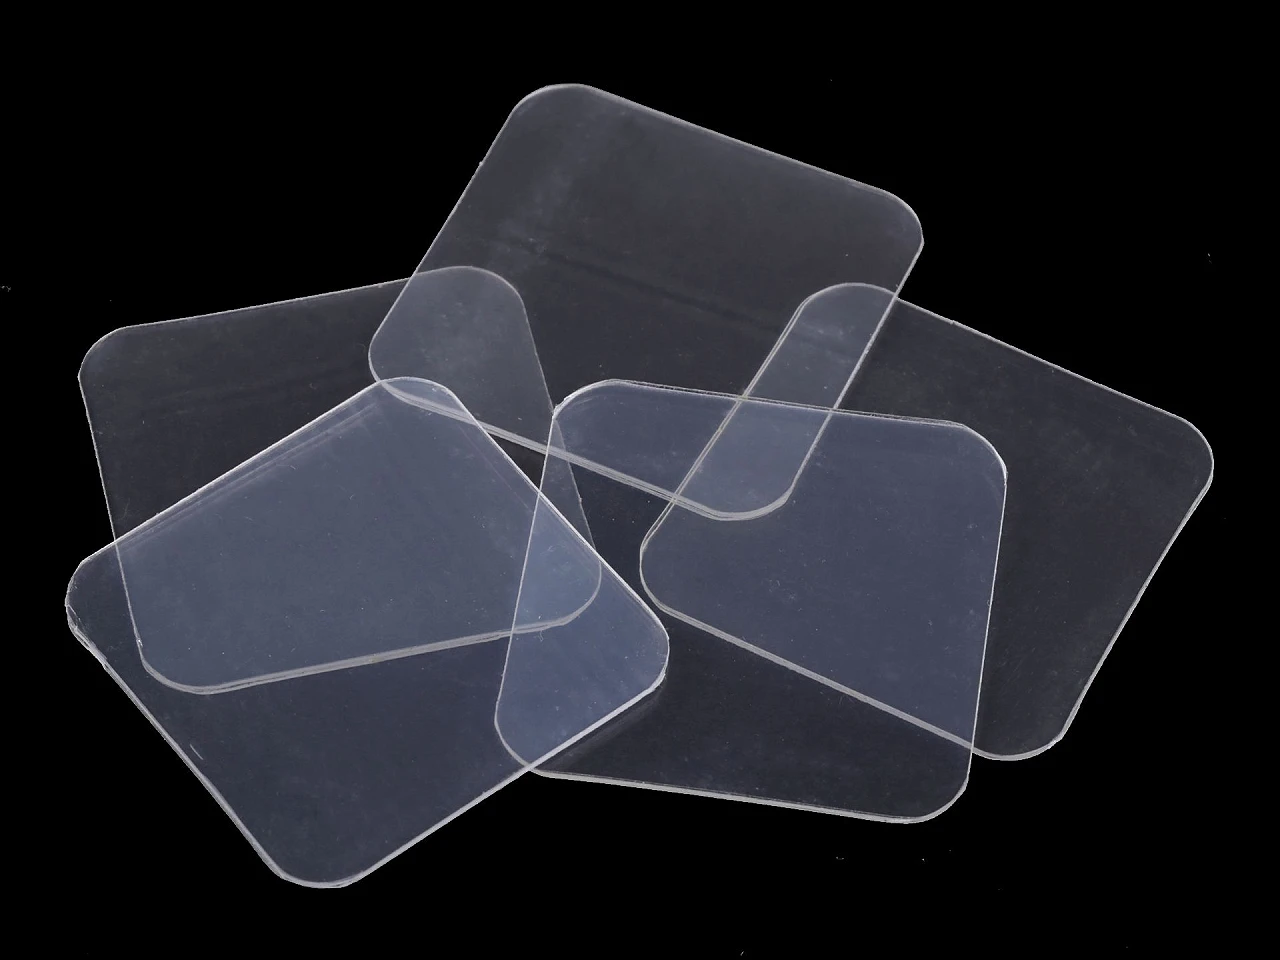 Nano transparentná obojstranná samolepka 5,8x5,8 cm-5ks